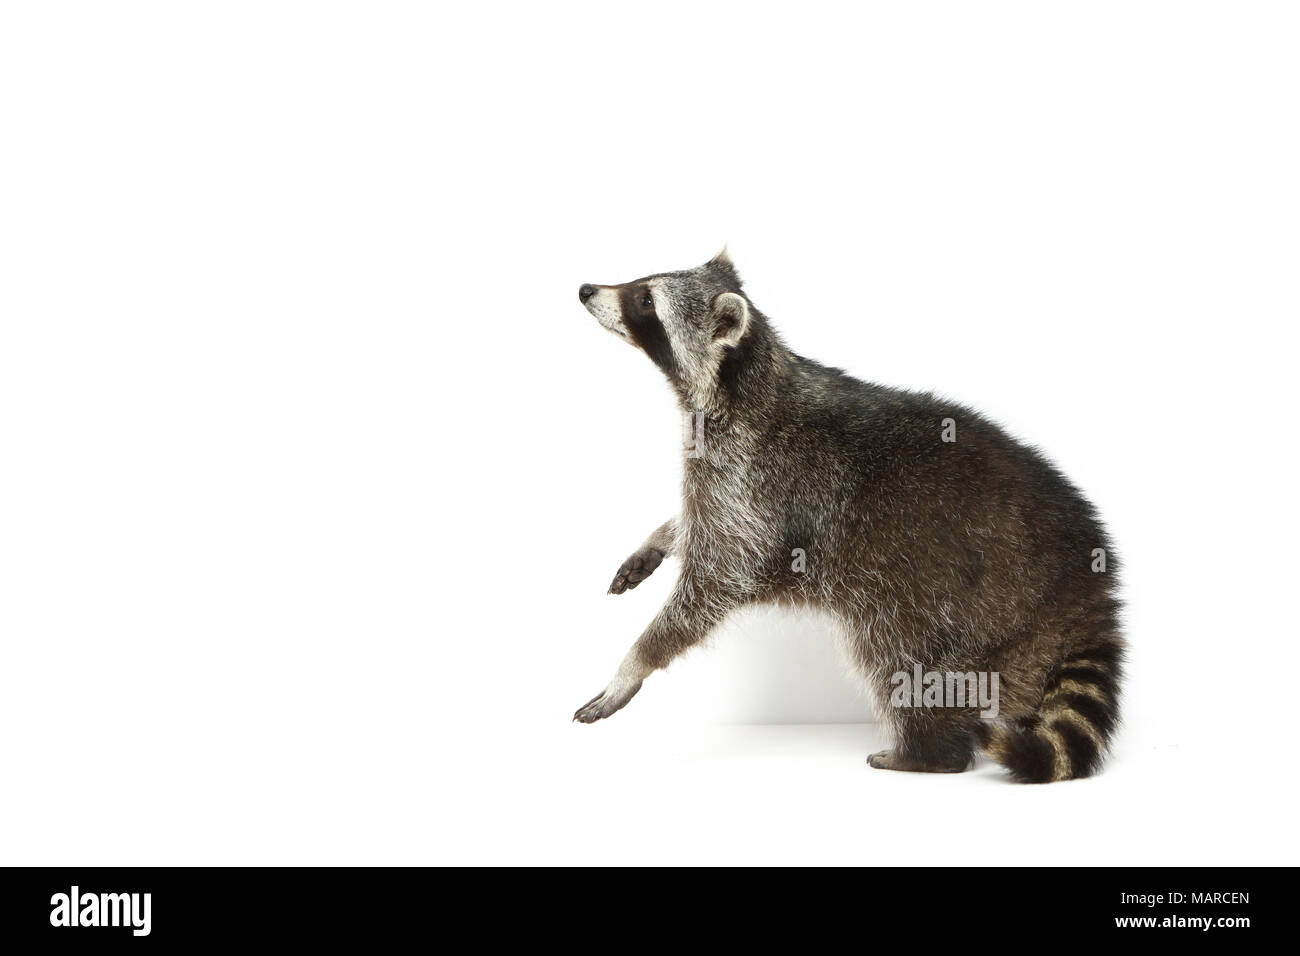 Raccoon (Procione lotor). Adulto in piedi sulle zampe posteriori. Studio Immagine contro uno sfondo bianco. Germania Foto Stock